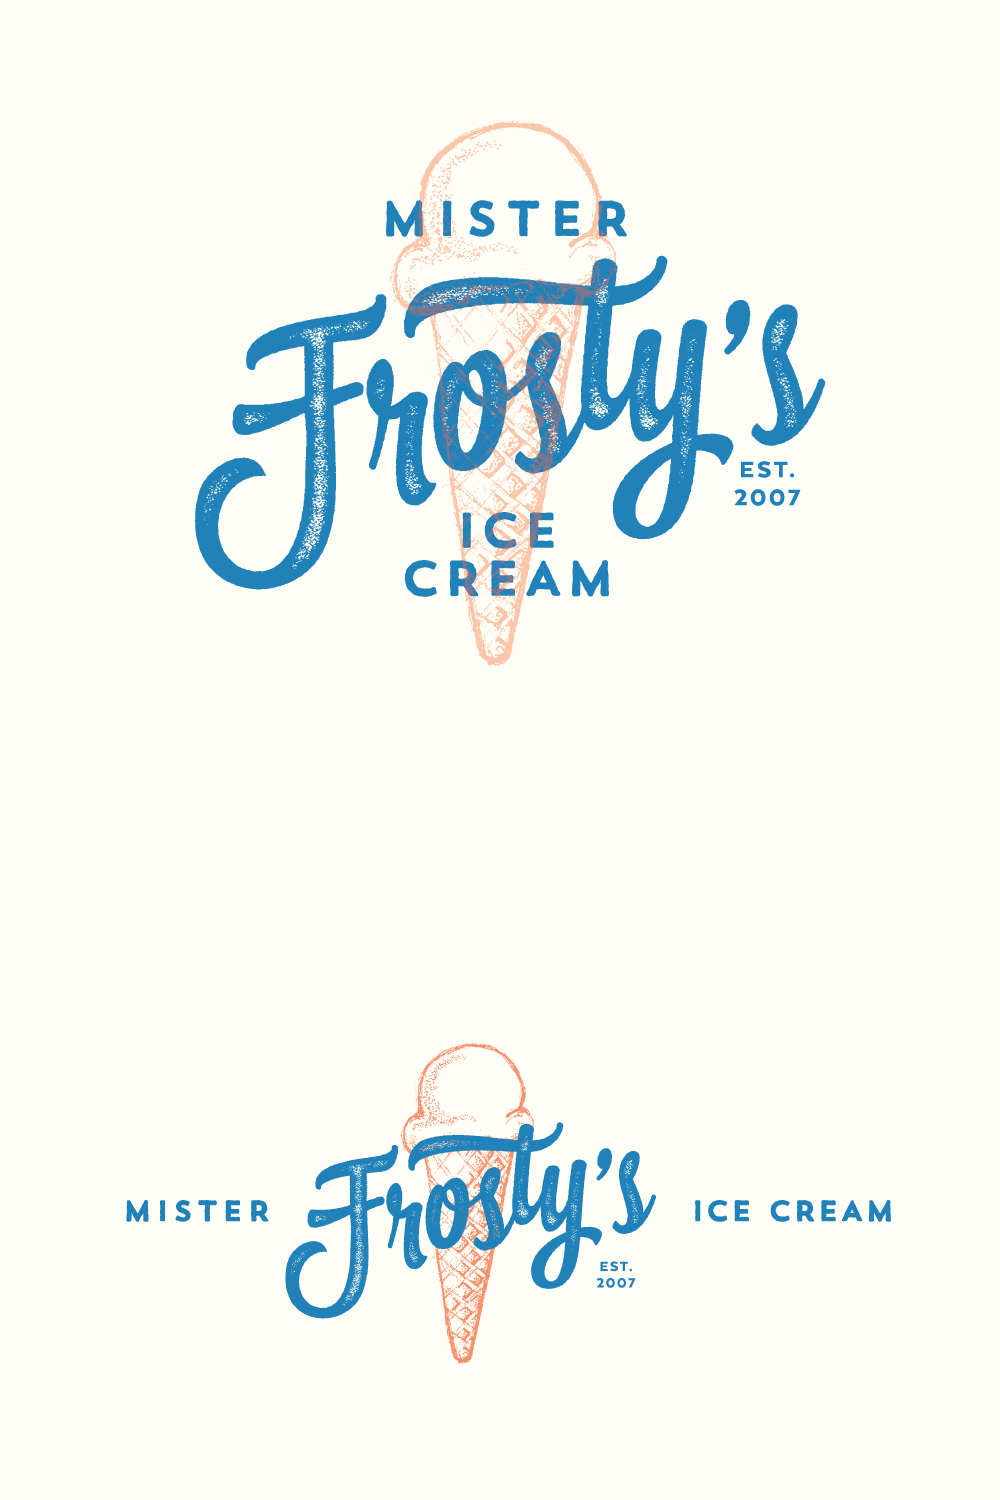 Thiết kế thương hiệu Frosty's Ice Cream trong tay nhà thiết kế 99design màu xanh lá cây.